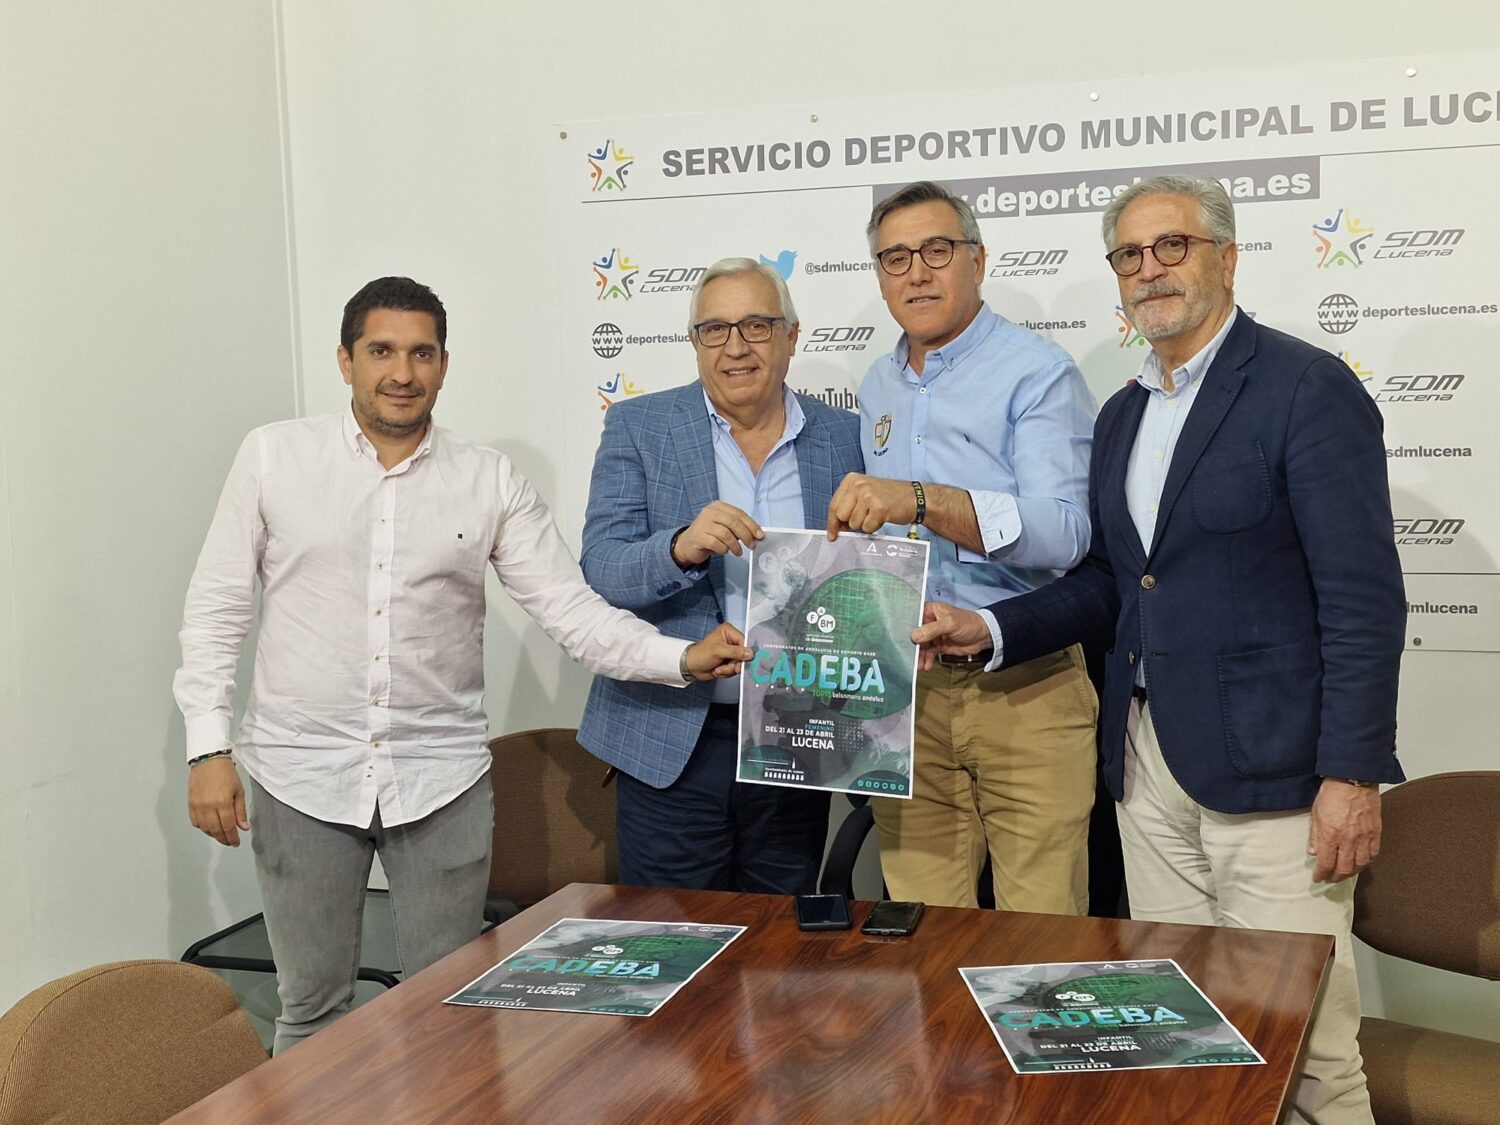 La fiesta del CADEBA representa el éxito del balonmano en Andalucía